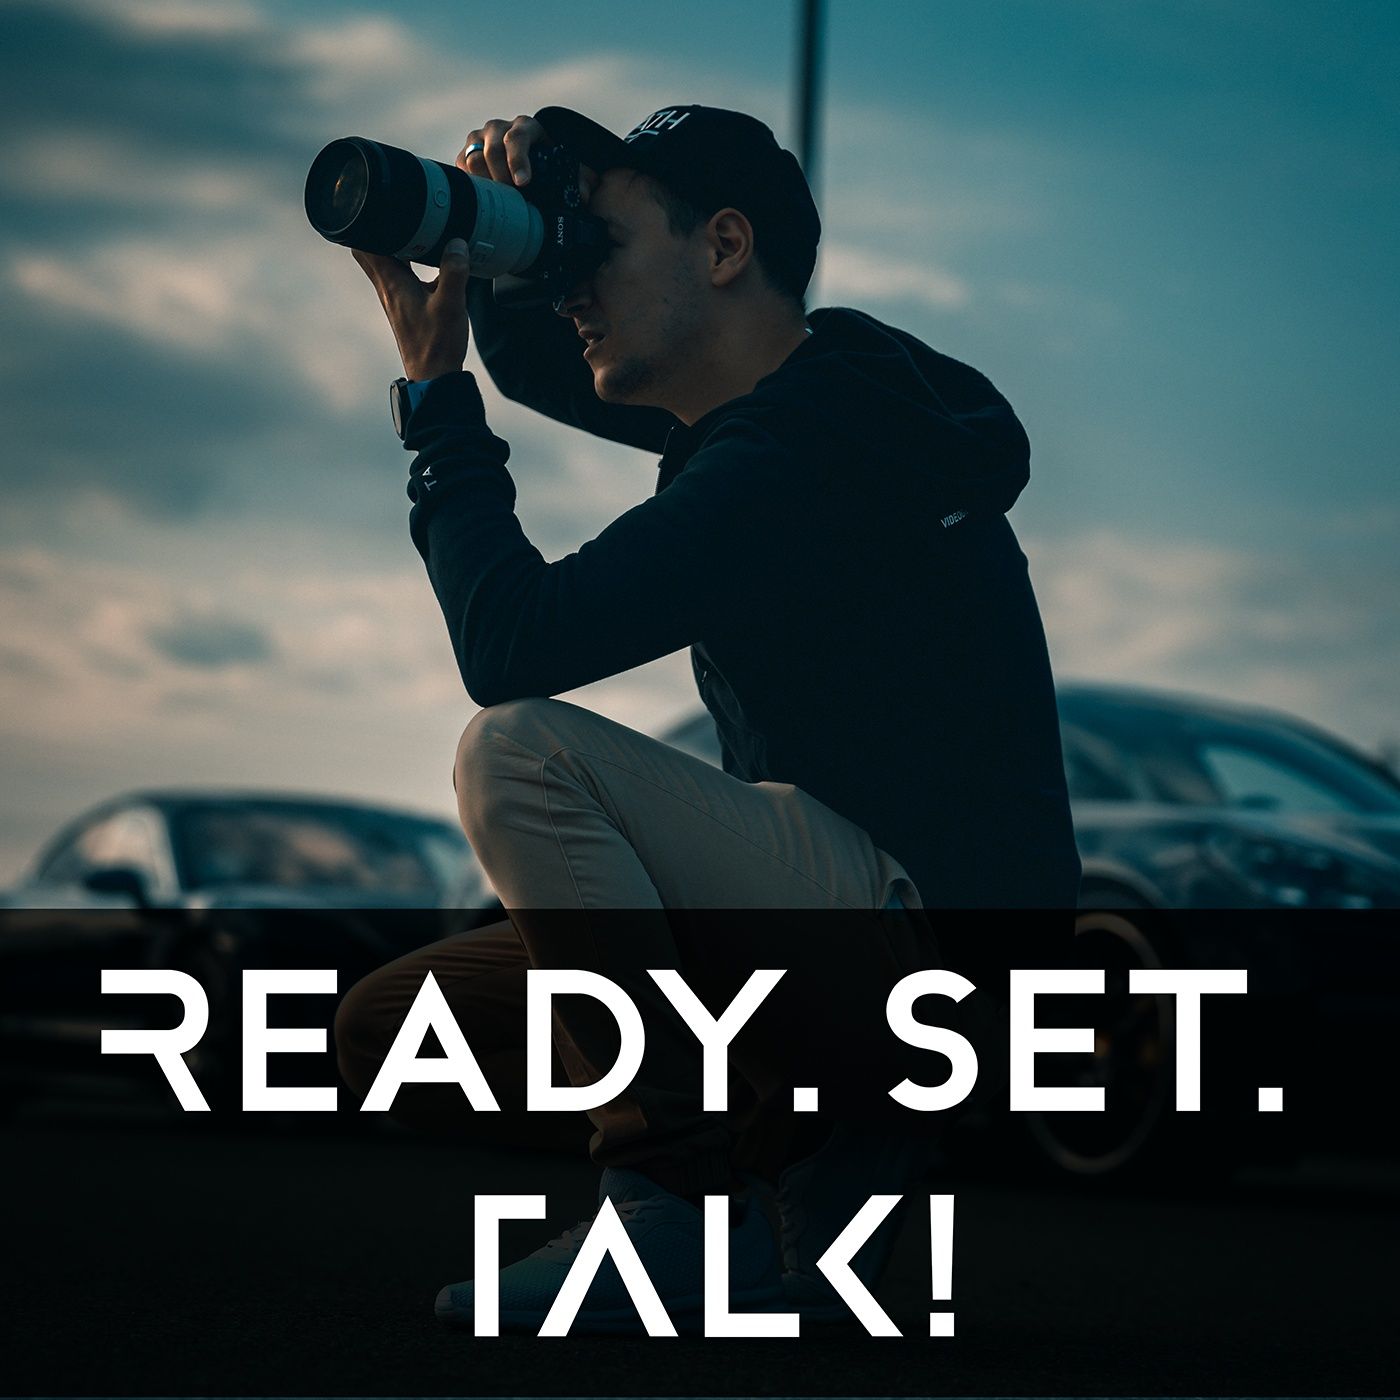 Ready. Set. TALK!